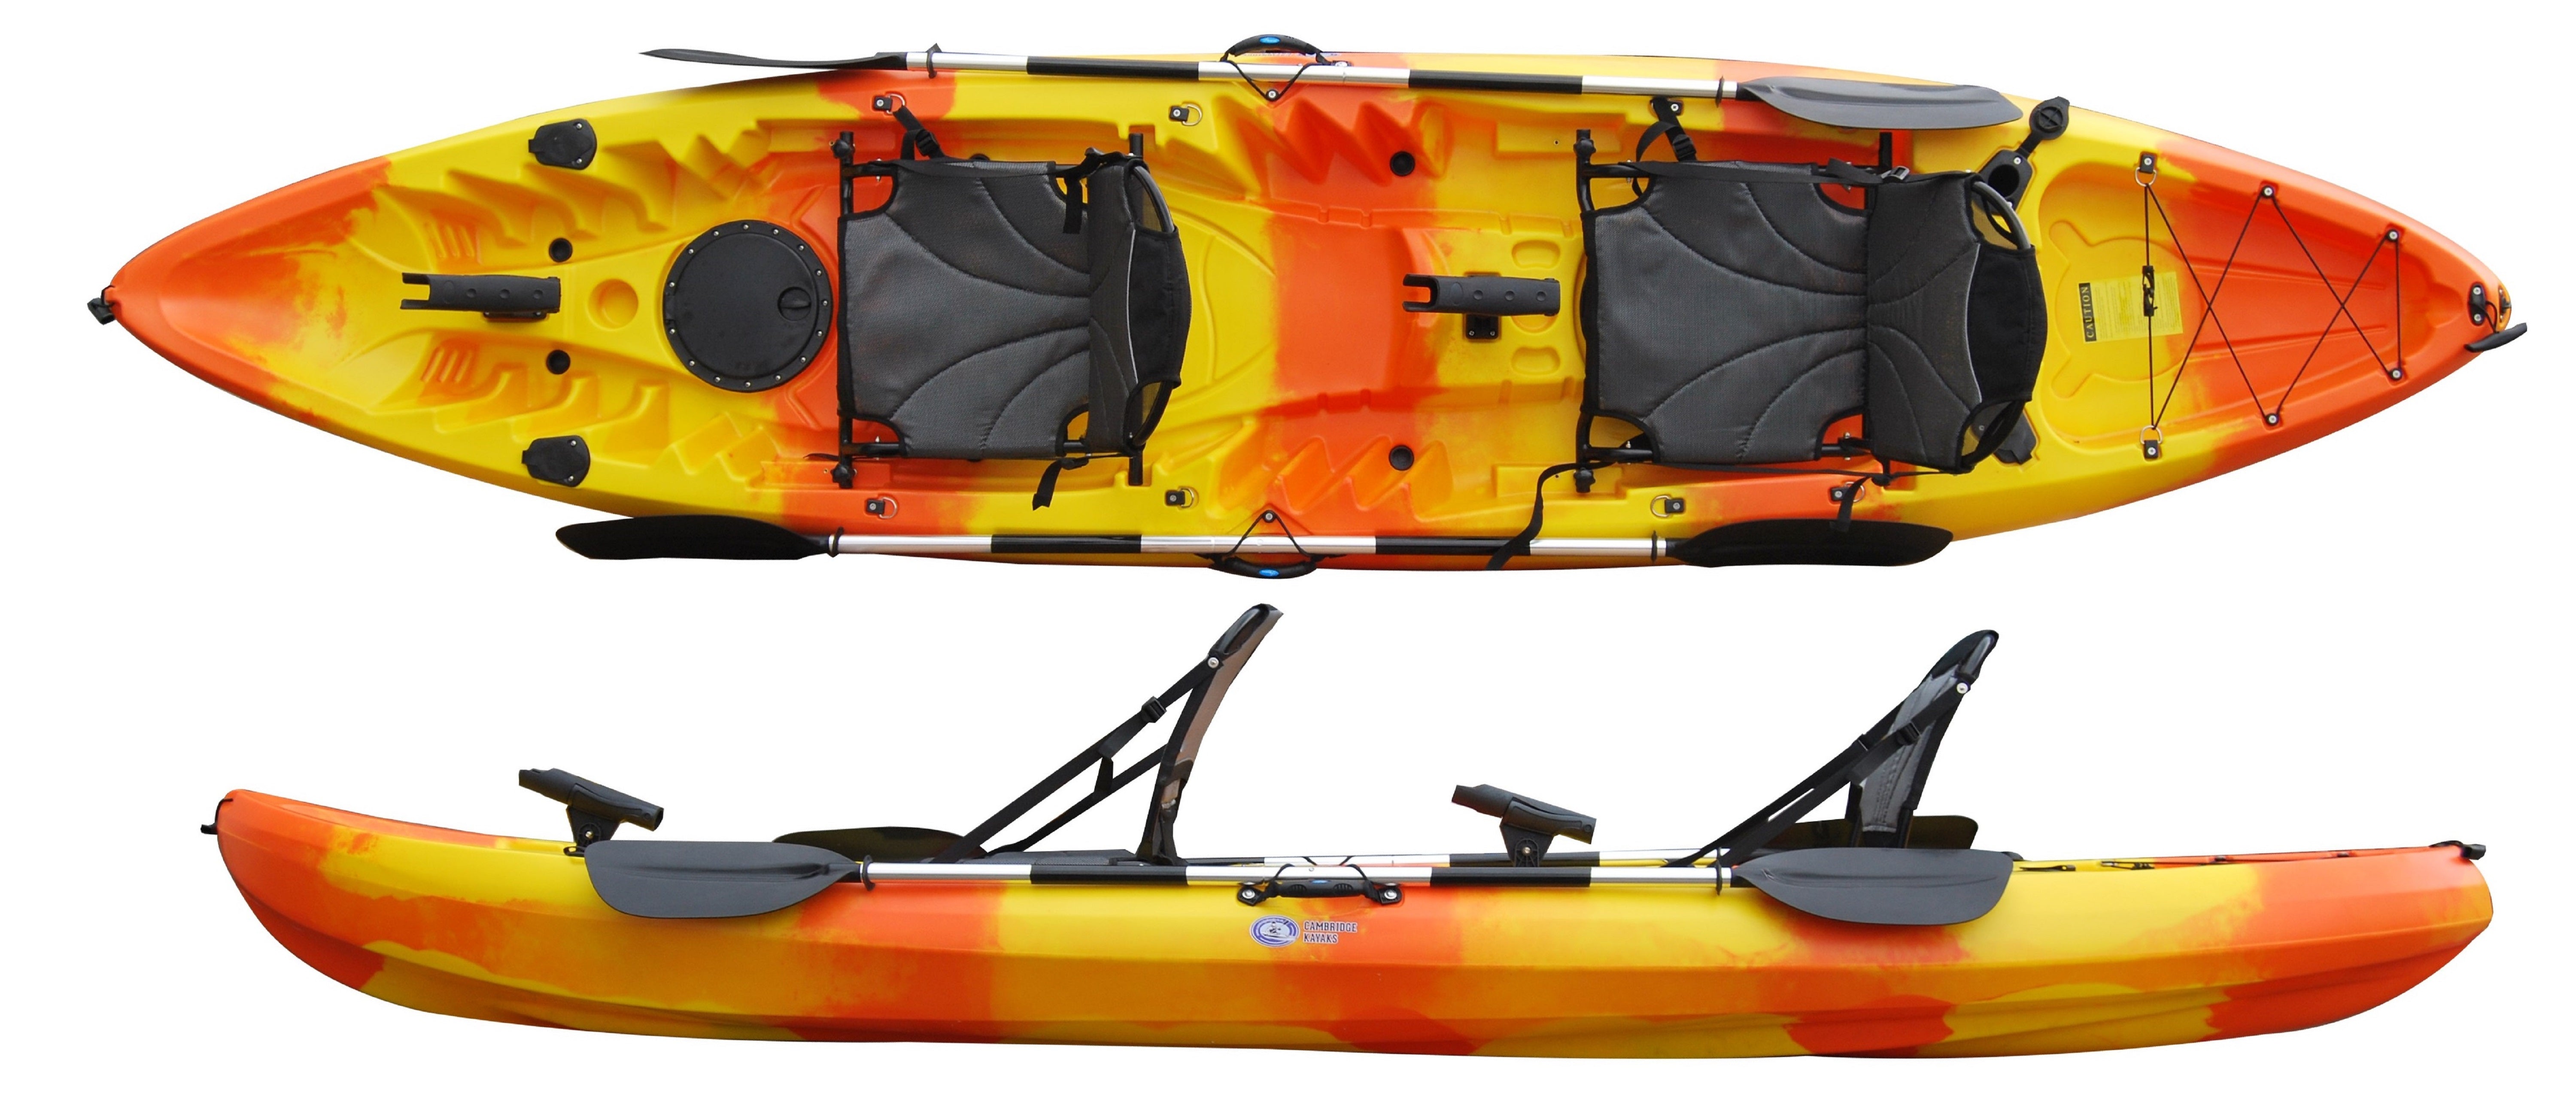 Fishing kayak from Cambridge Kayaks - Online kayak store Tagged